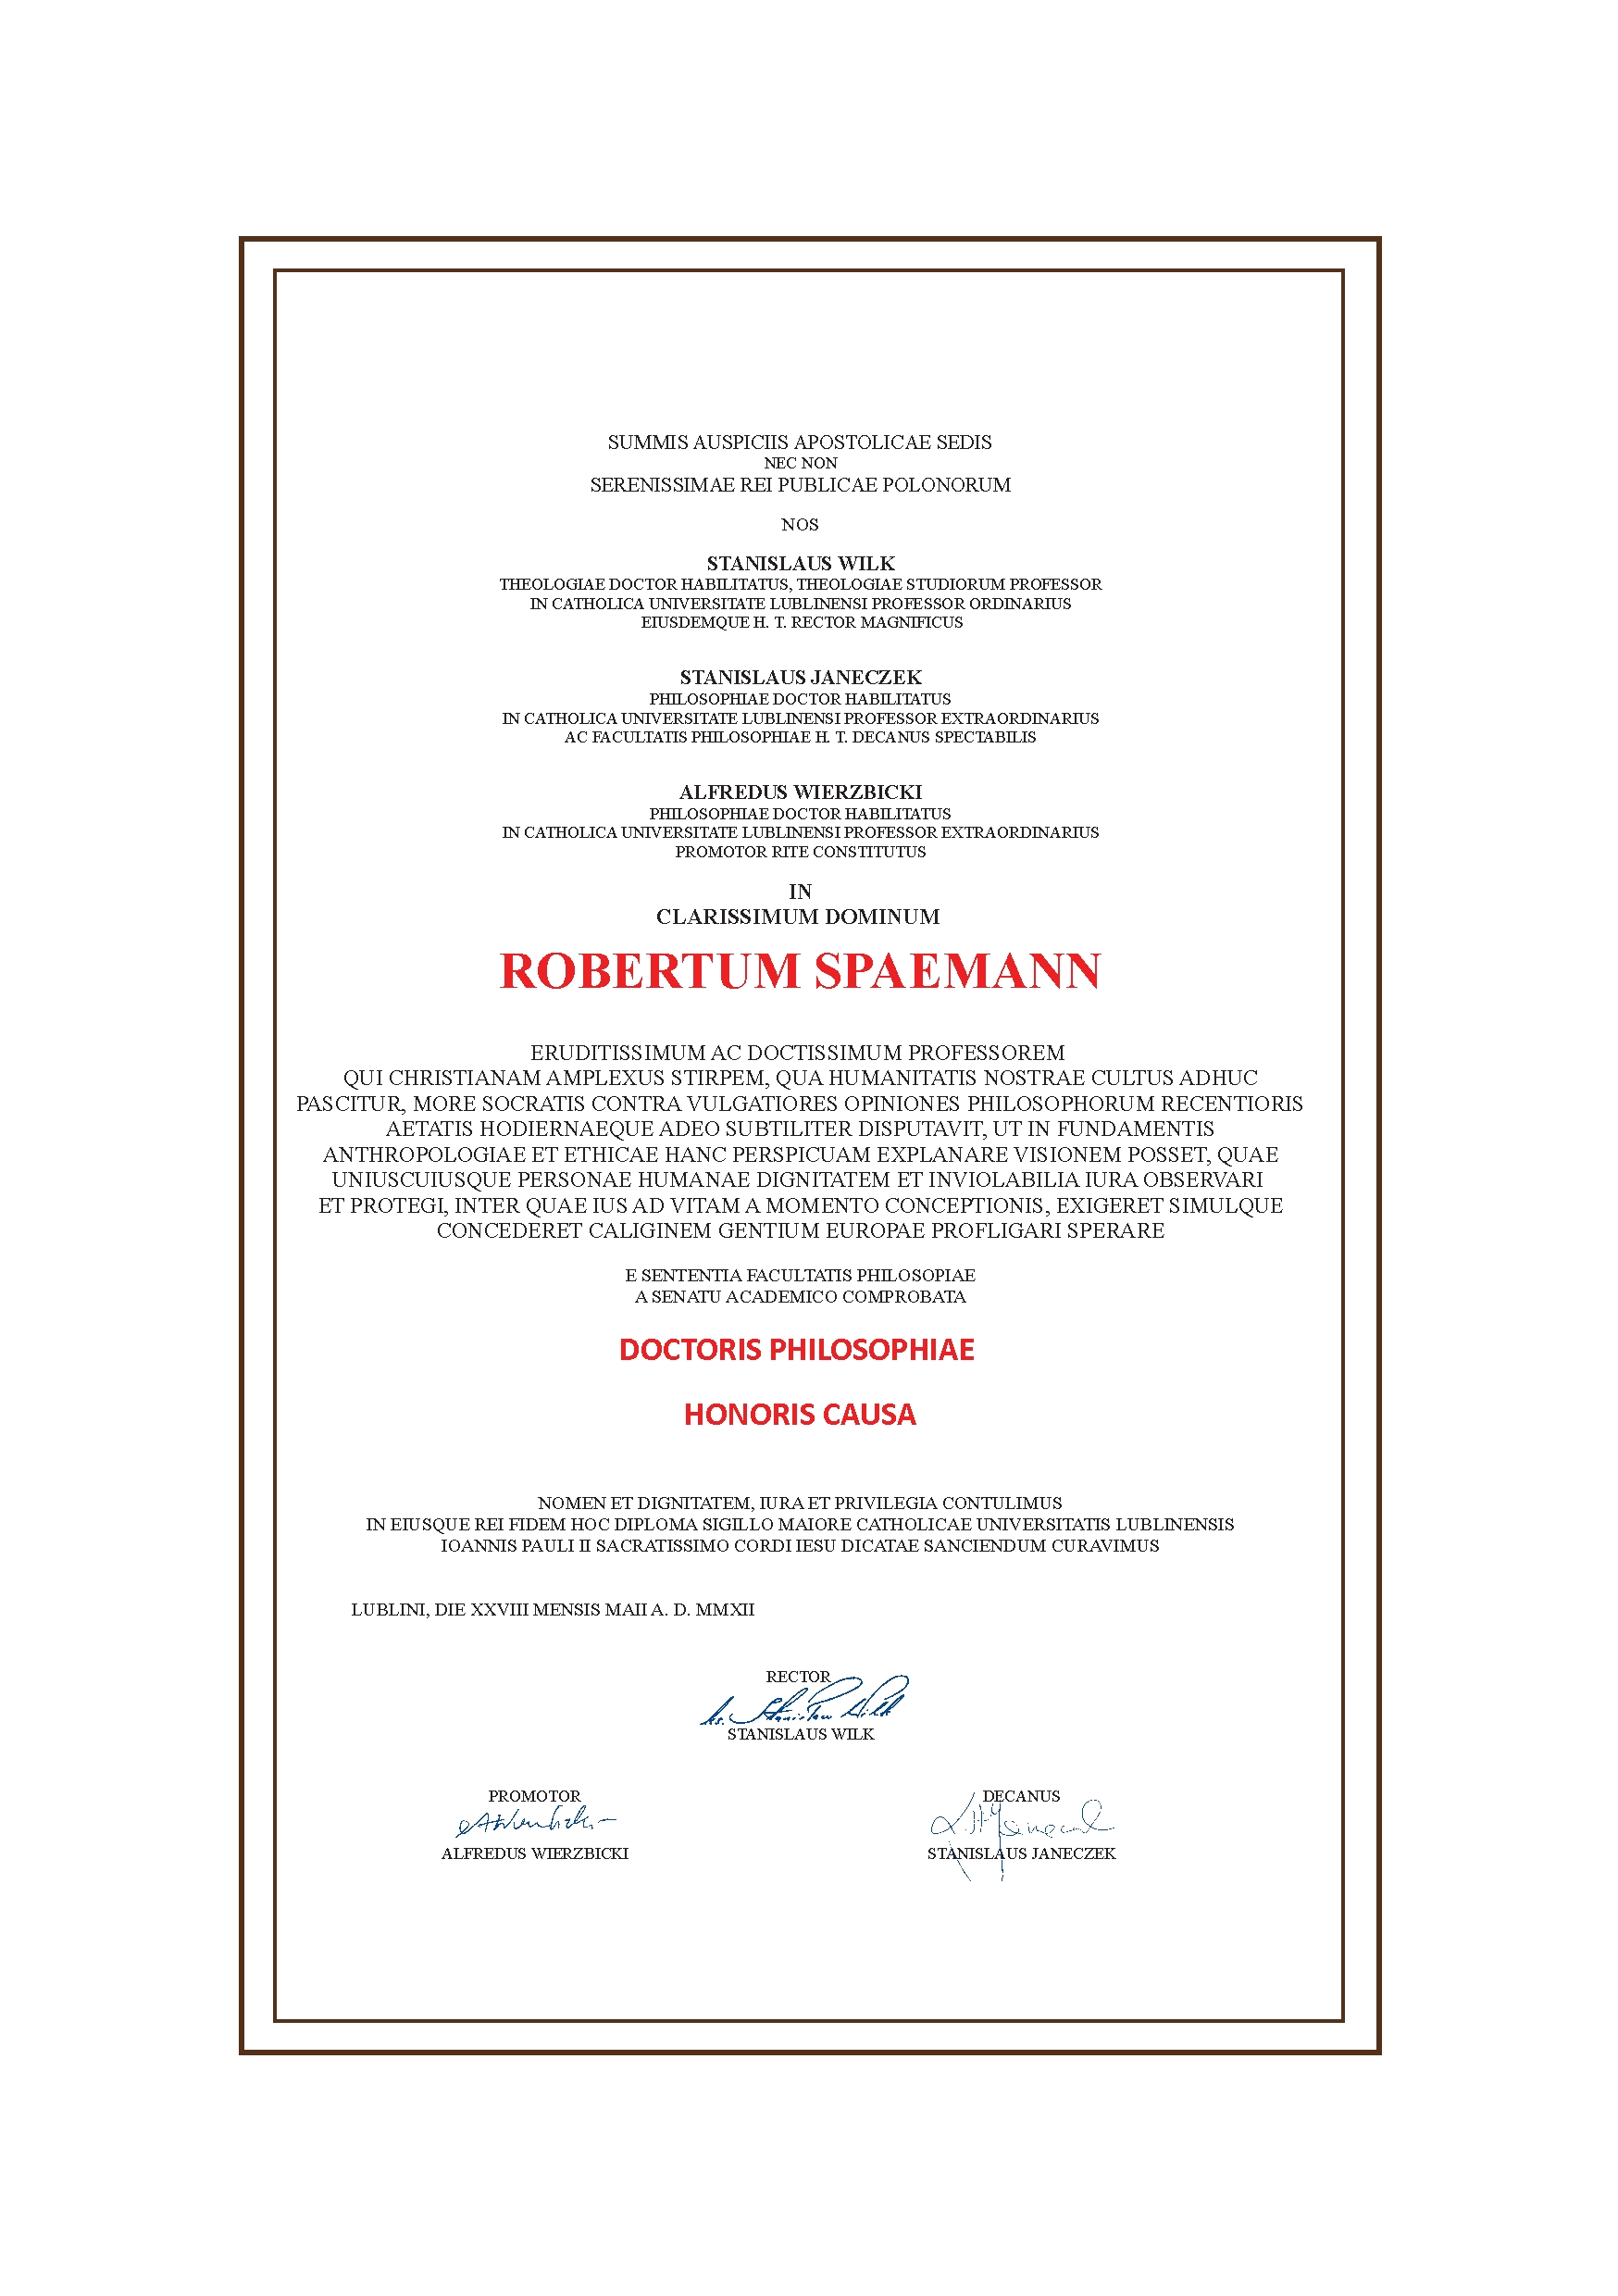 KUL - Wydział Filozofii - Robert Spaemann - Doktor honoris causa KUL - Czy Drugi Kierunek Studiów Jest Płatny 2018